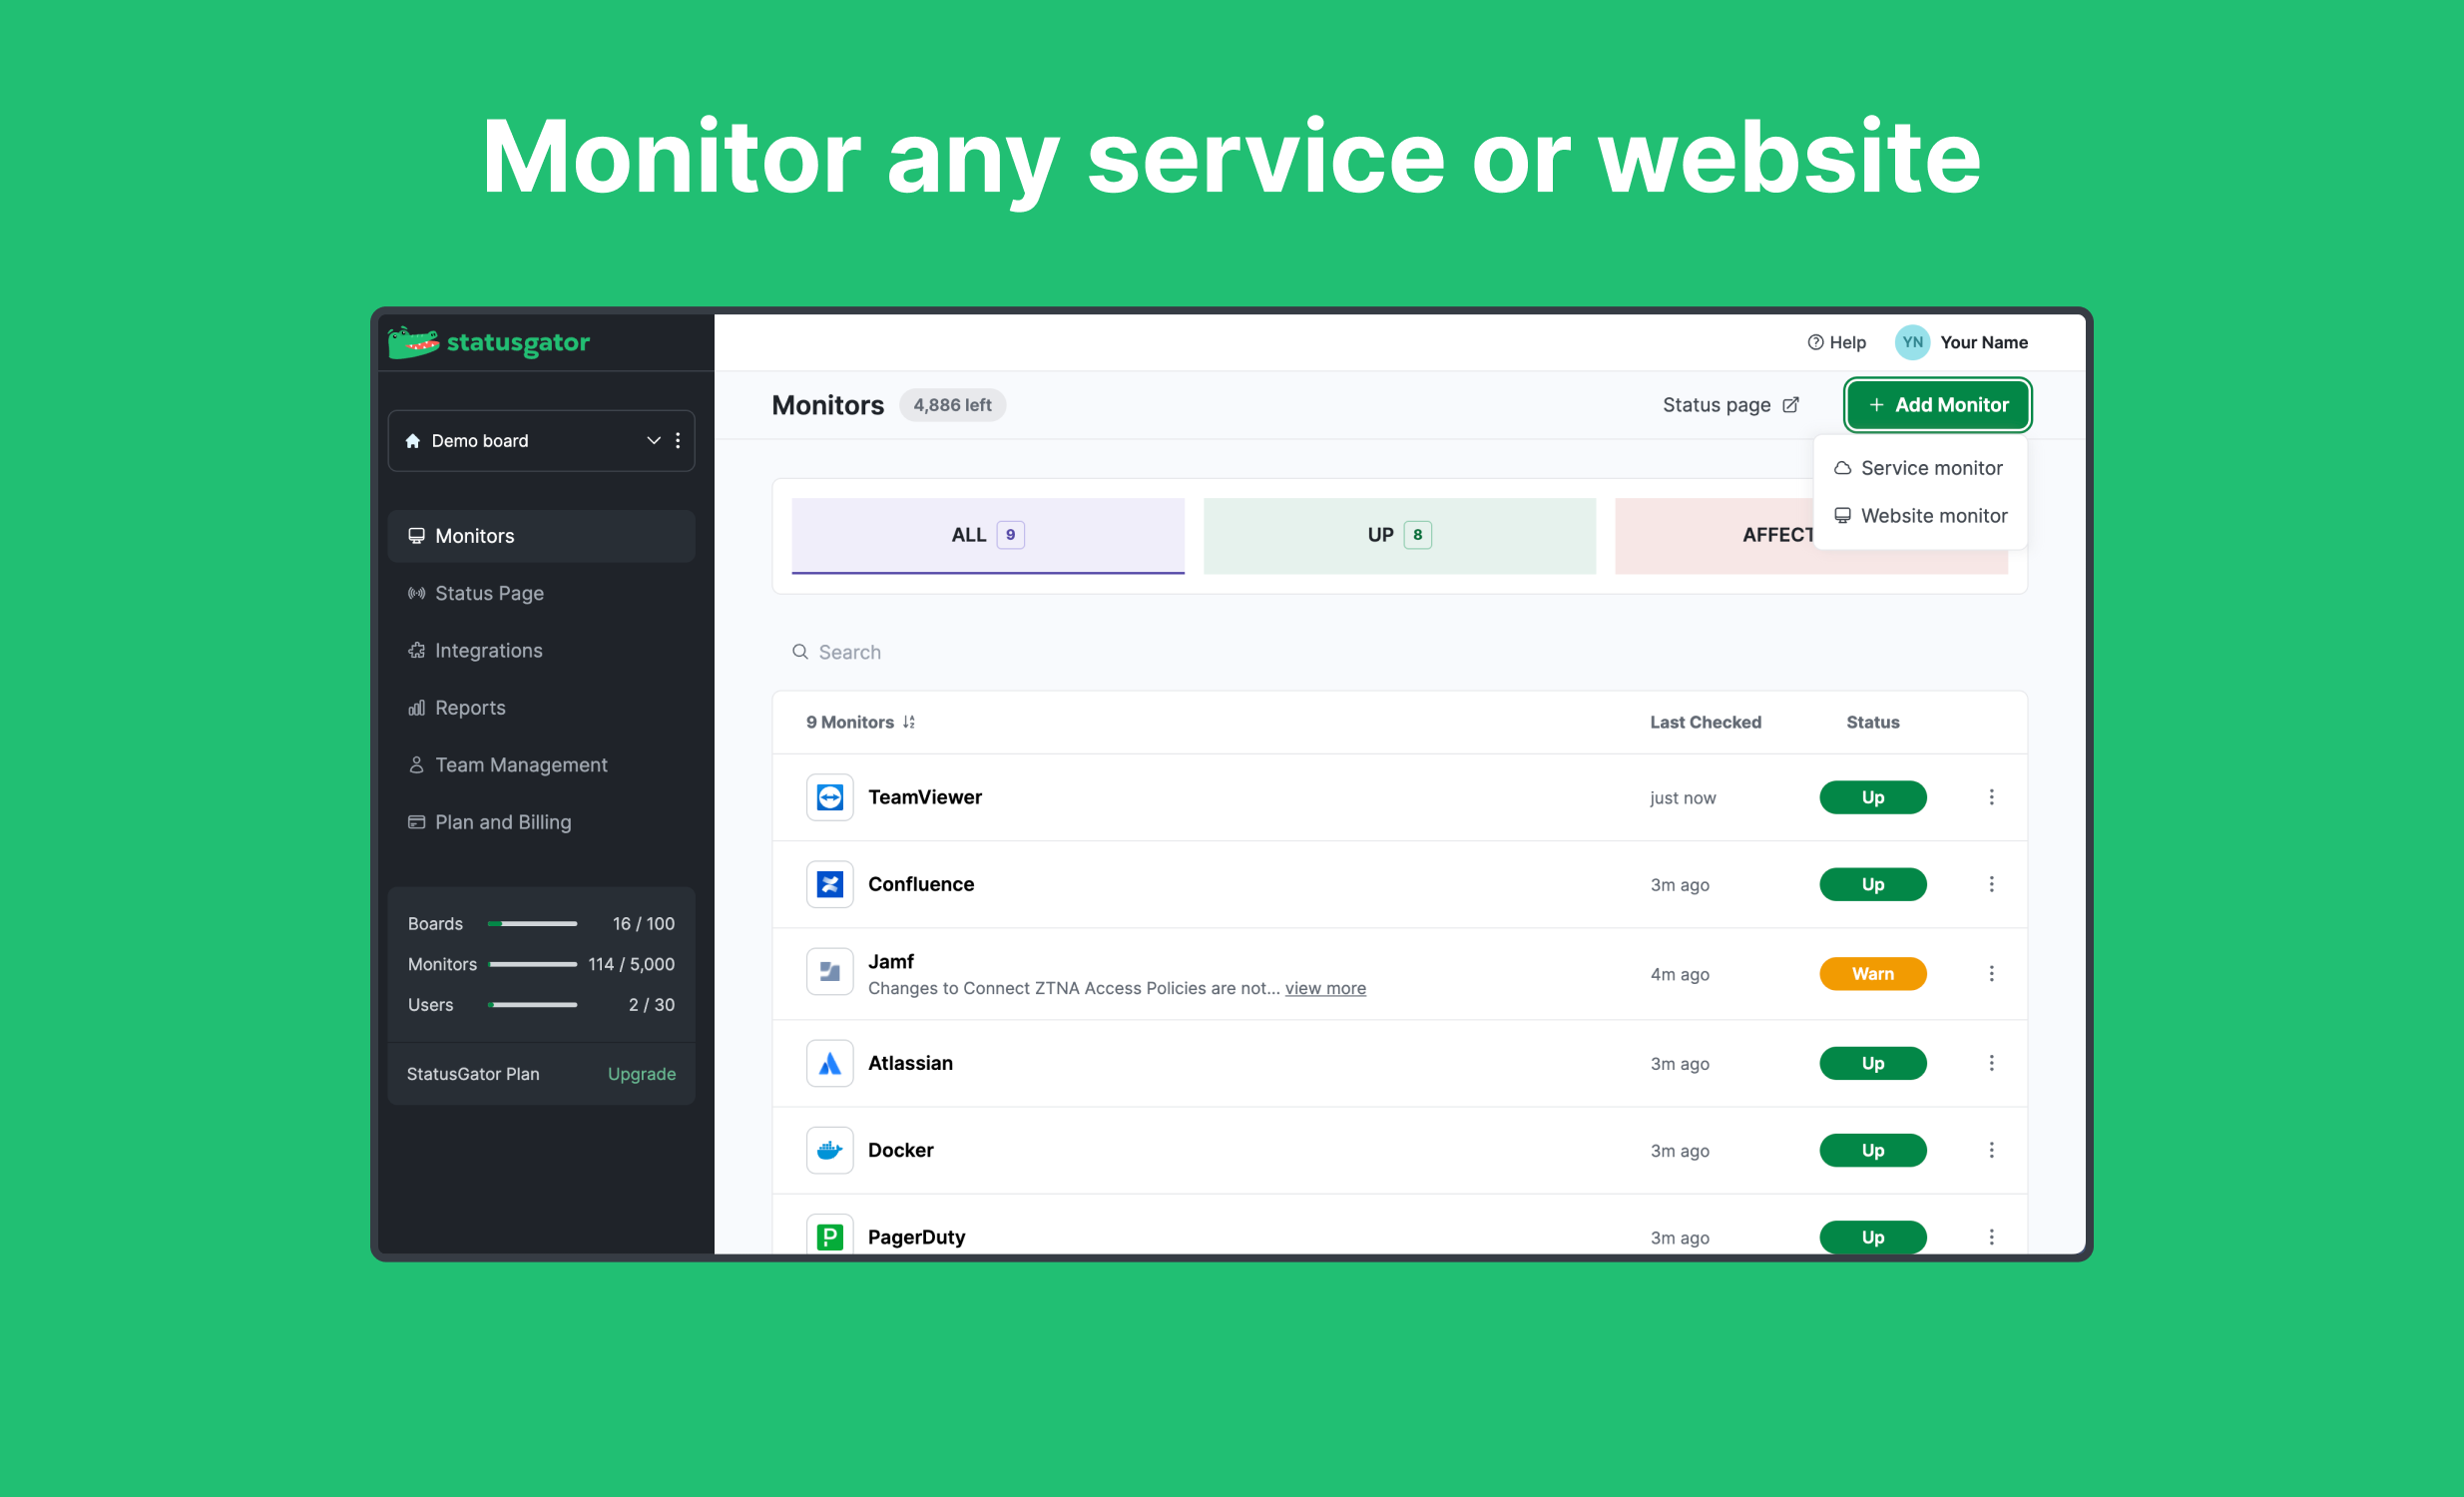 StatusGator: Monitors board